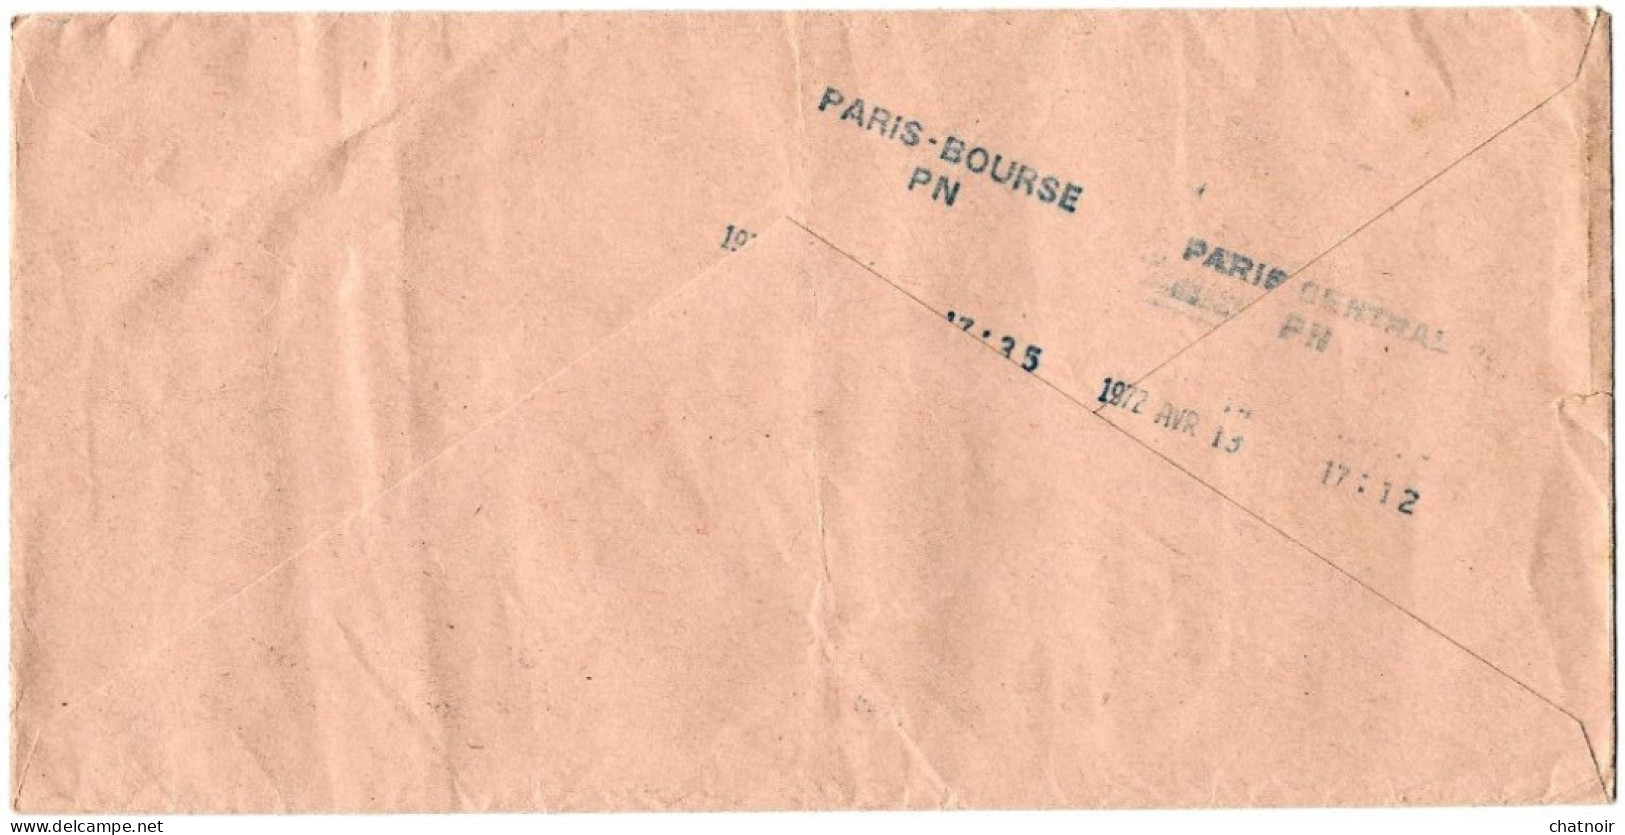 ENVELOPPE    Service Officiel   Circulaire Télégraphique  "par Tubes" Bureau De PARIS  /paris Bourse  1972 - Documents Of Postal Services